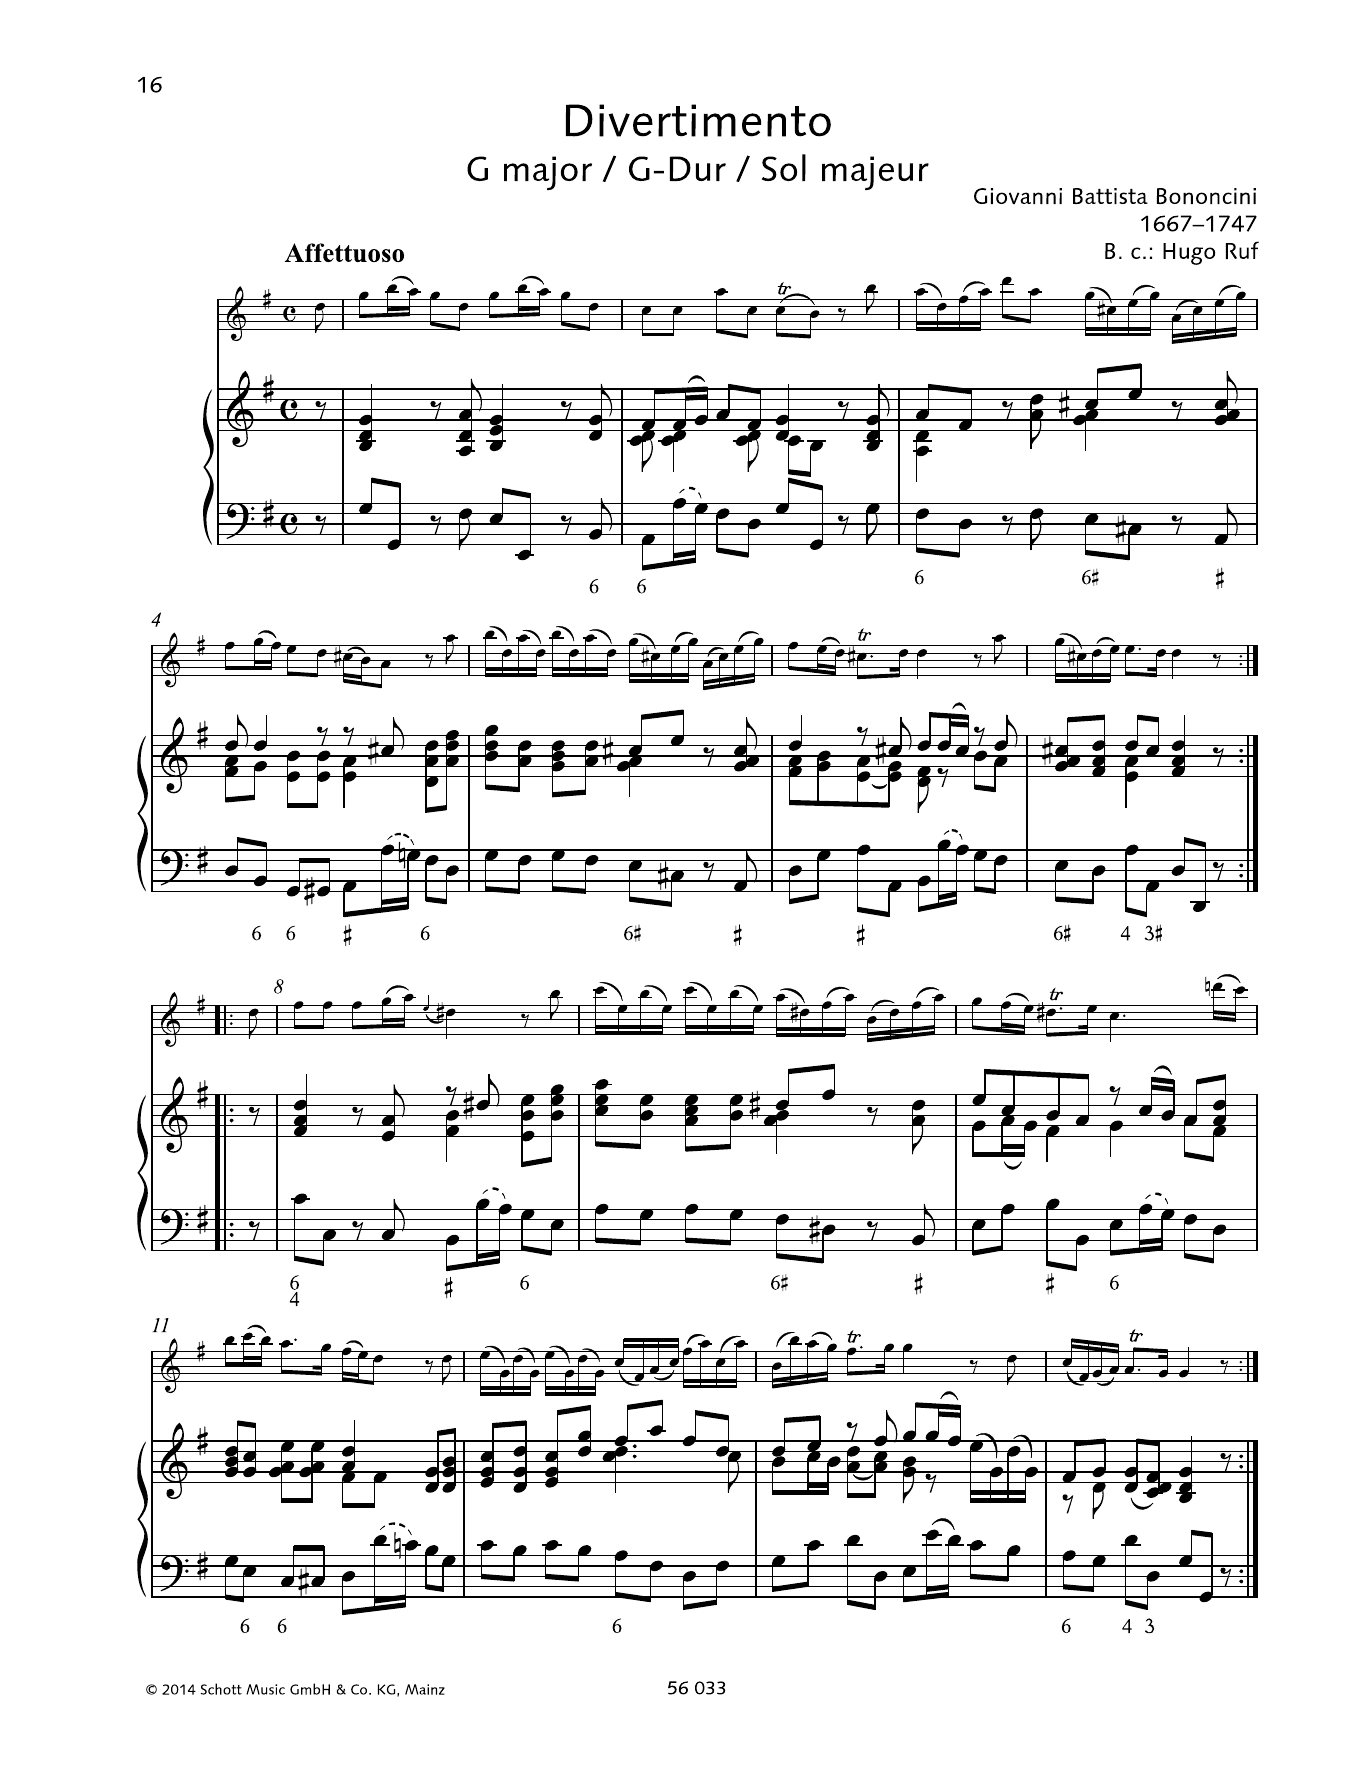 Download Giovanni Battista Bononcini Divertimento G major Sheet Music